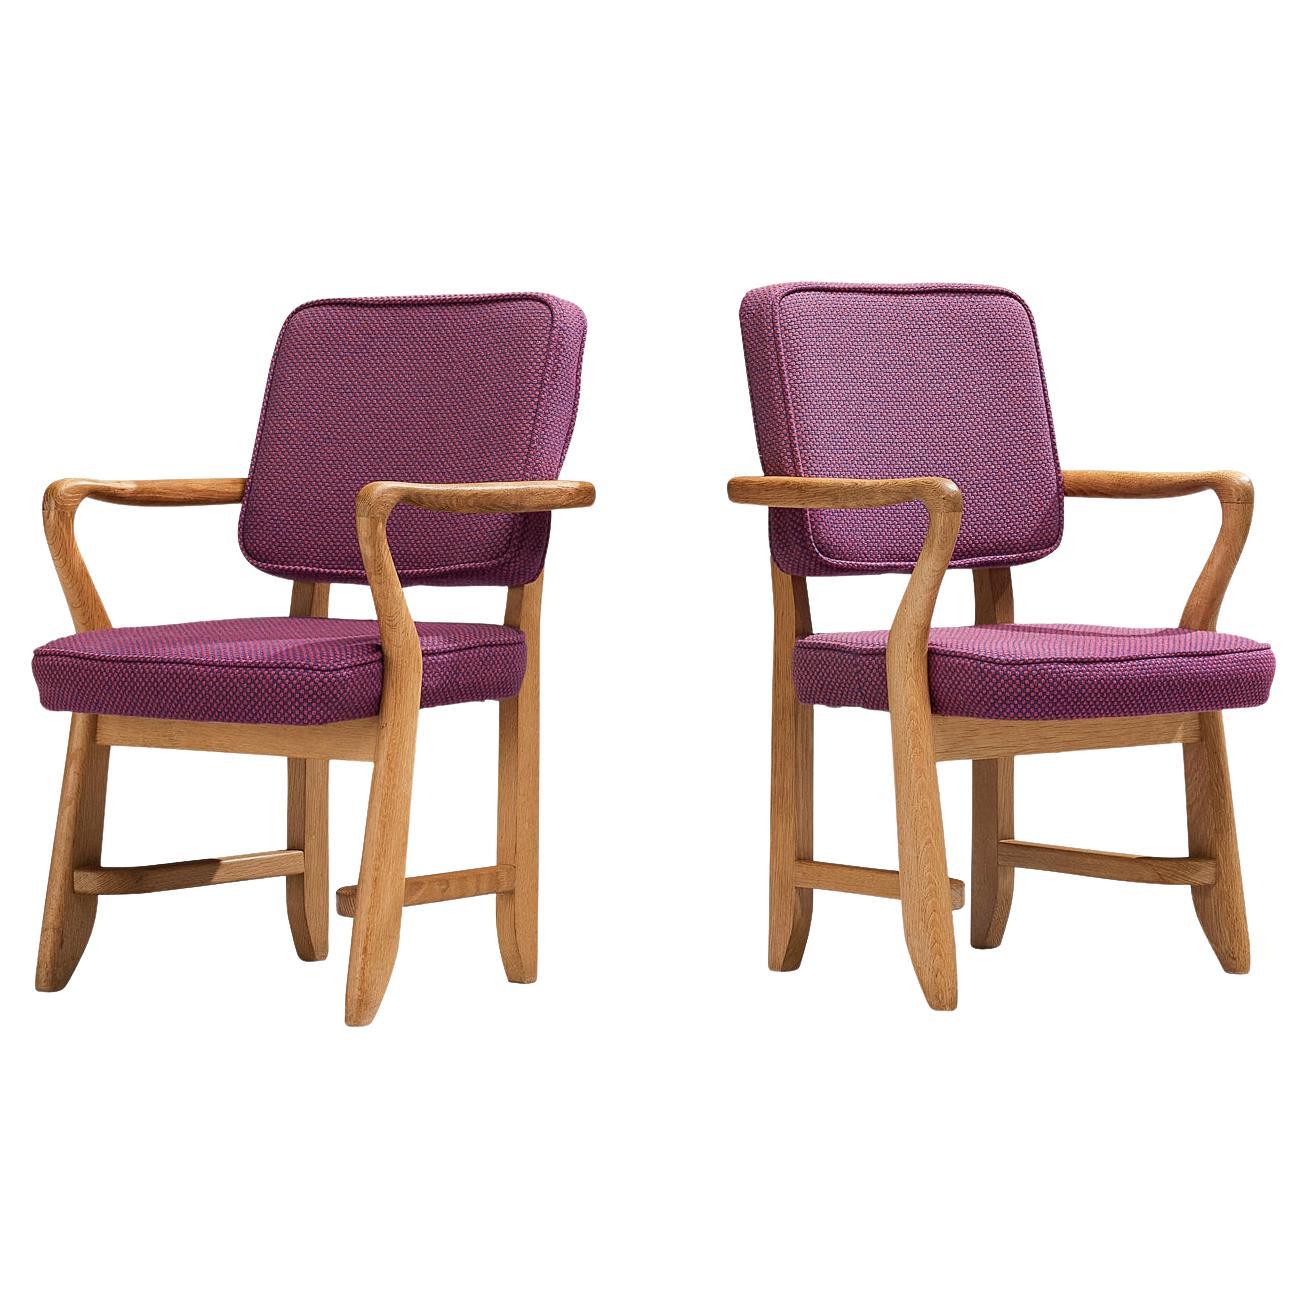 Guillerme & Chambron paire de fauteuils Denis en chêne et tissu d'ameublement violet 